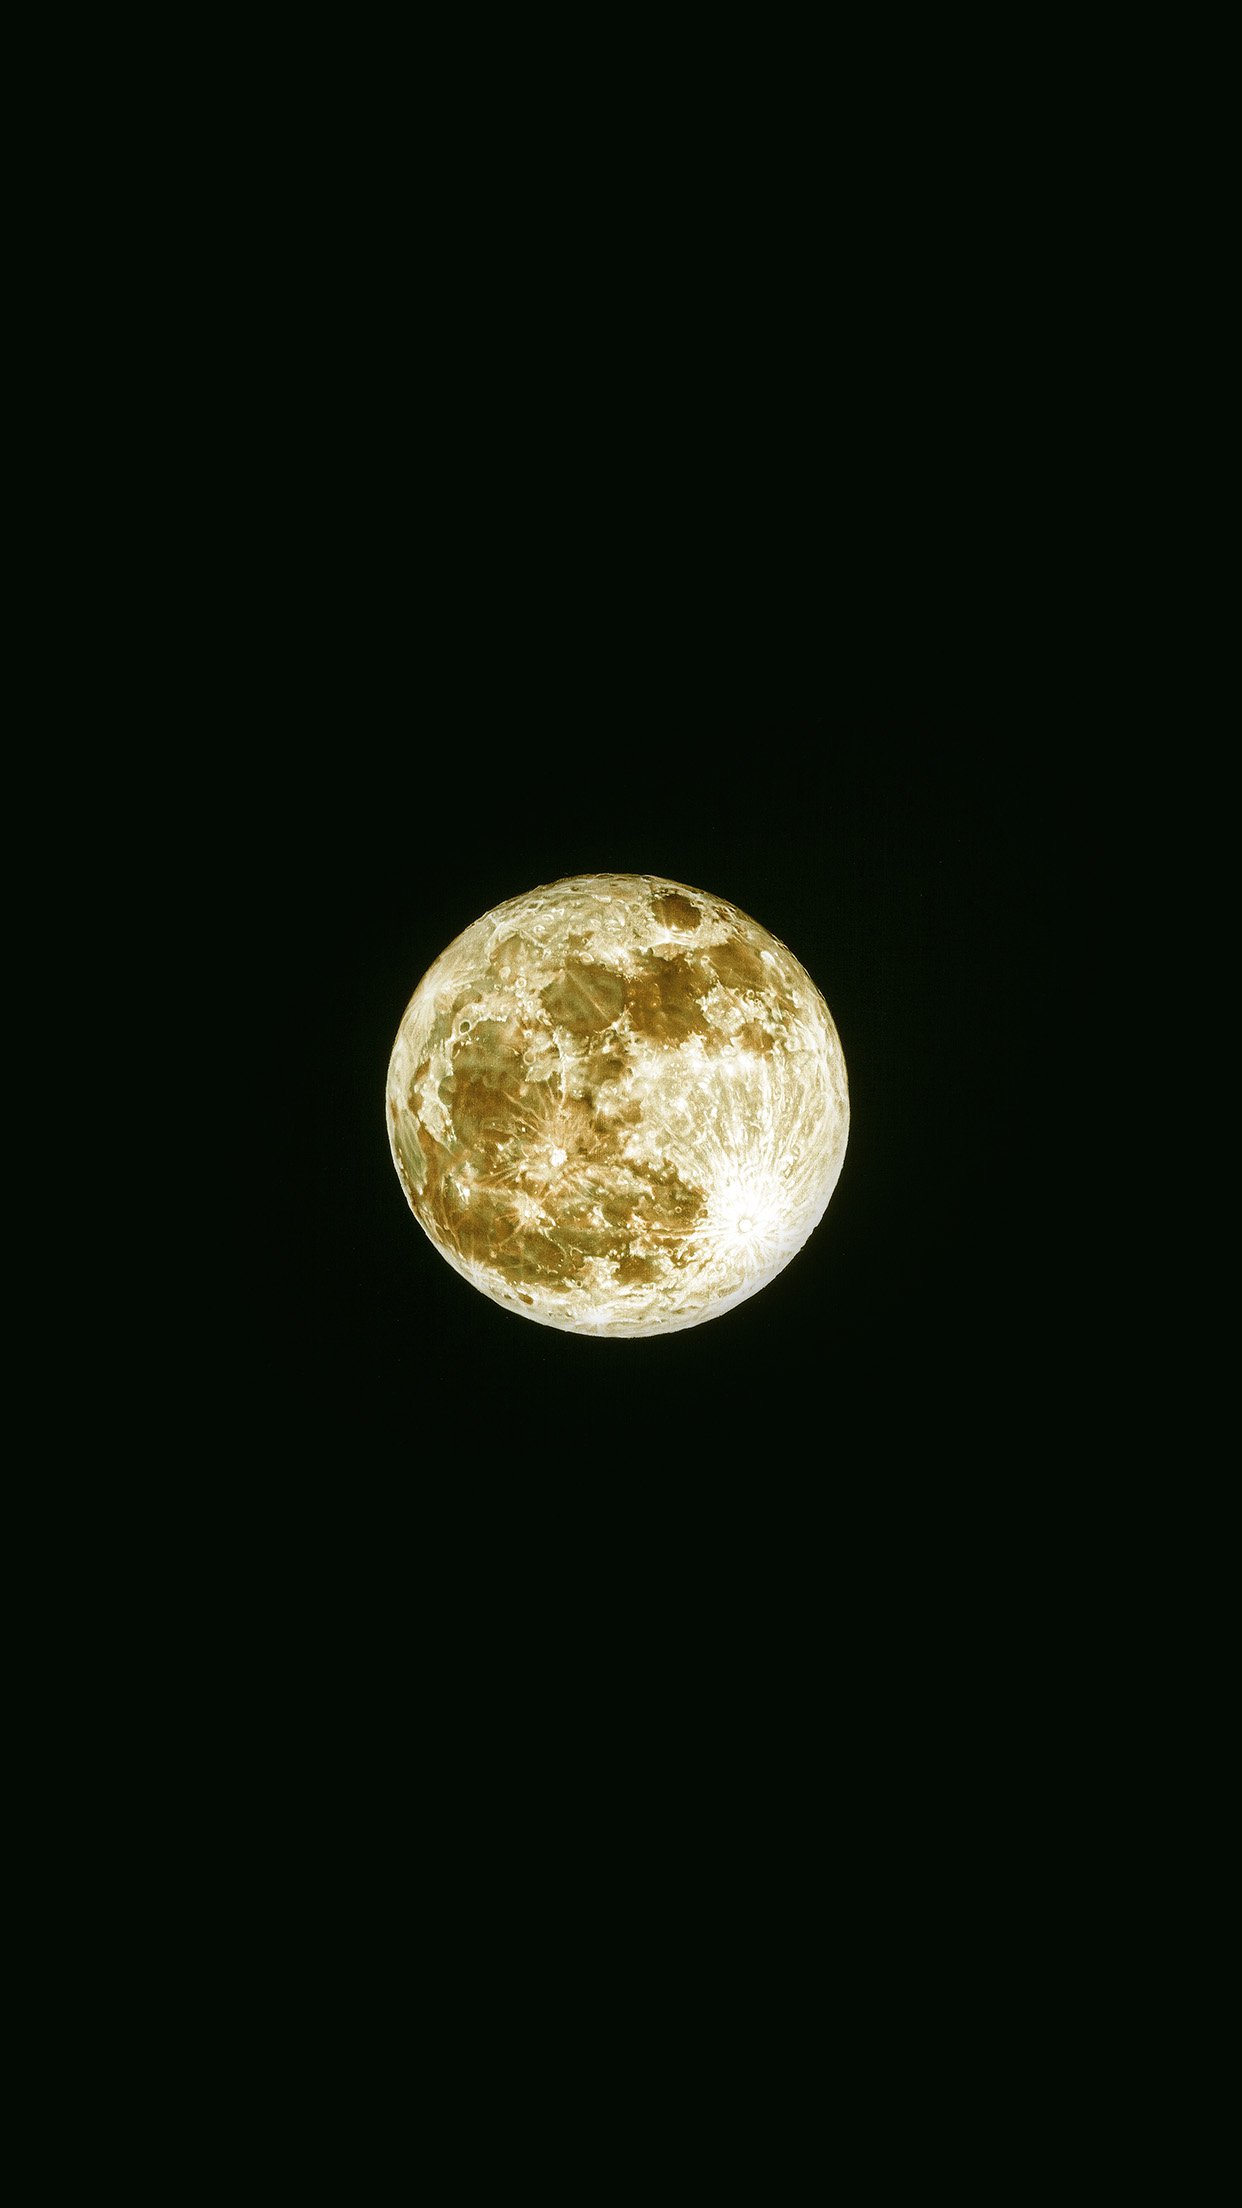 天文望远镜拍摄的高清月球图片